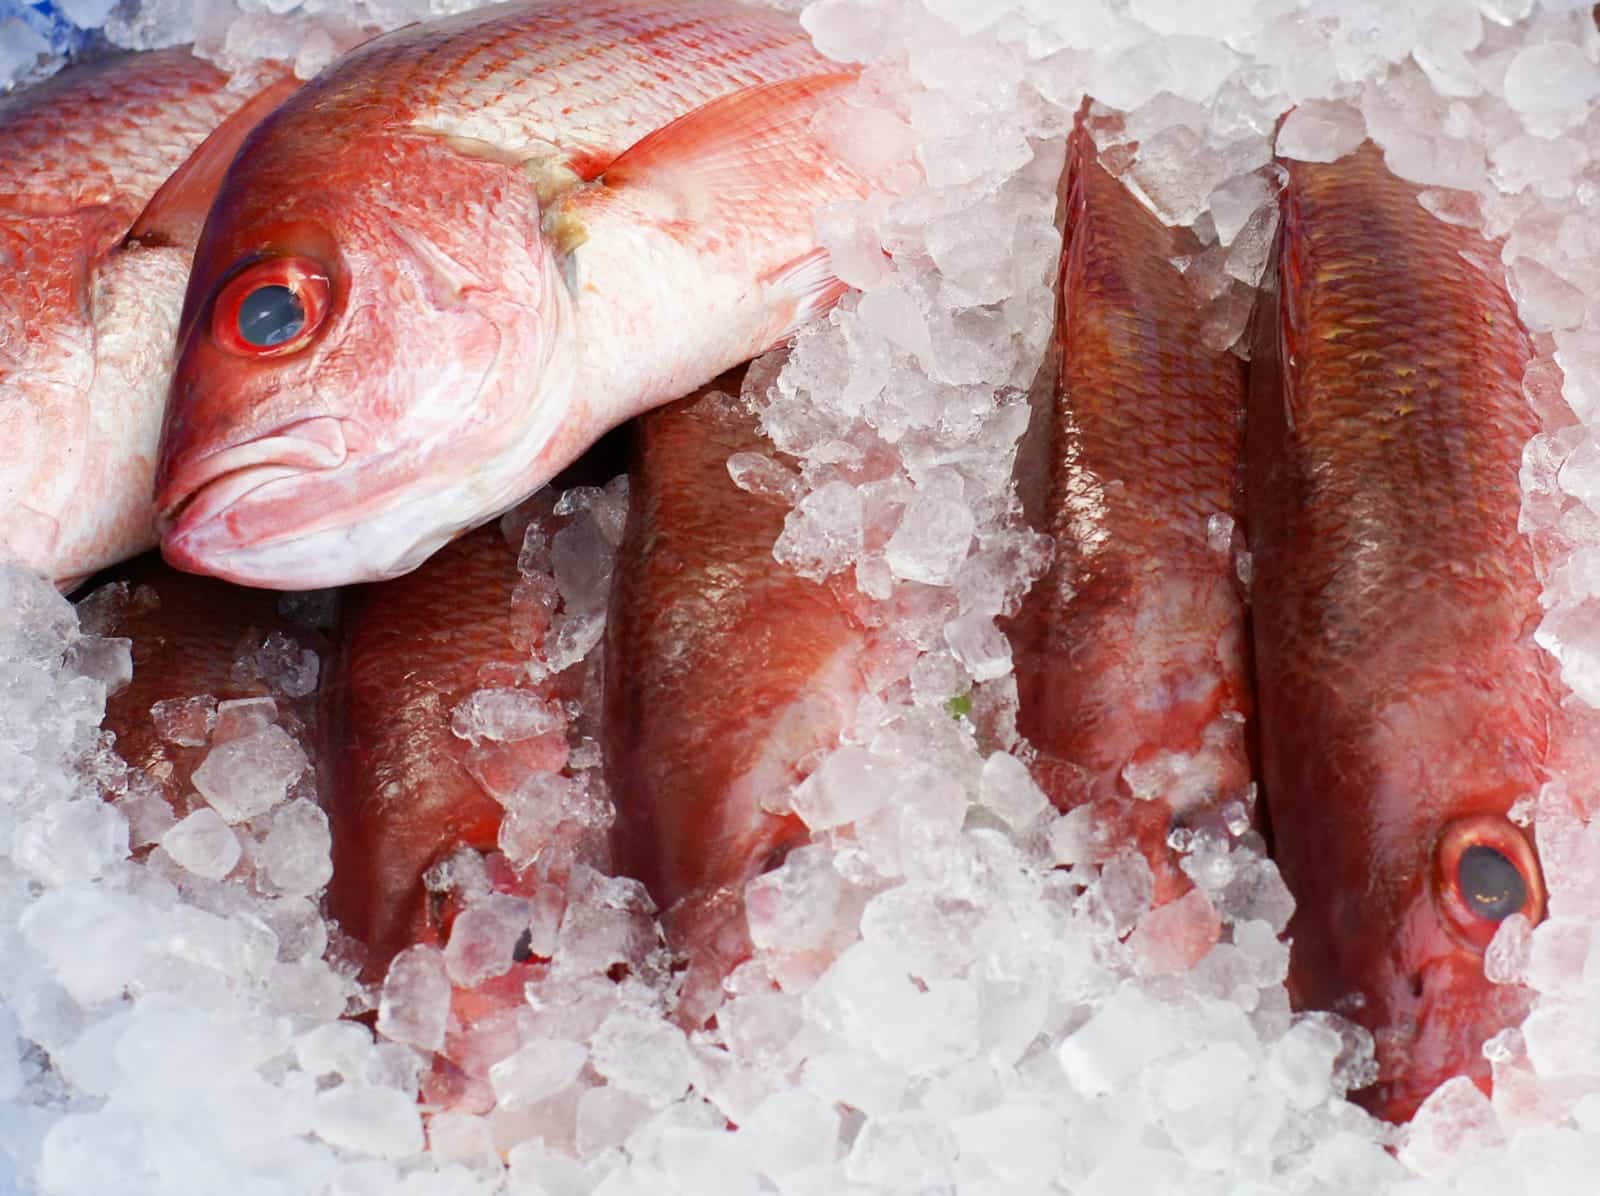 El hielo triturado es una de las mejores formas de consercar el pescado, ya que lo puede mantener fresco por más días.